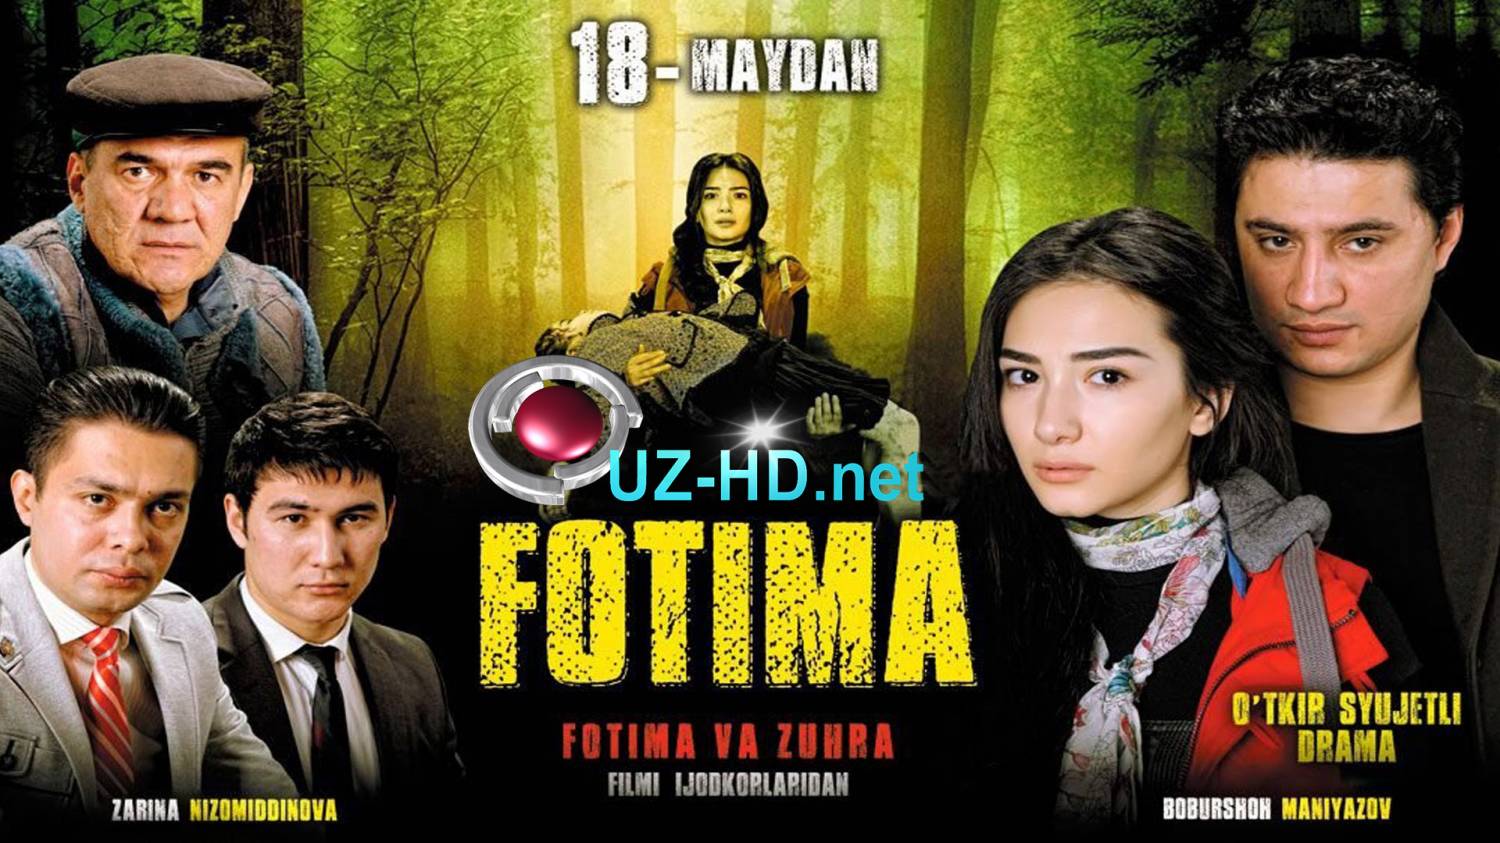 Fotima (o'zbek film) | Фотима (узбекфильм) - смотреть онлайн